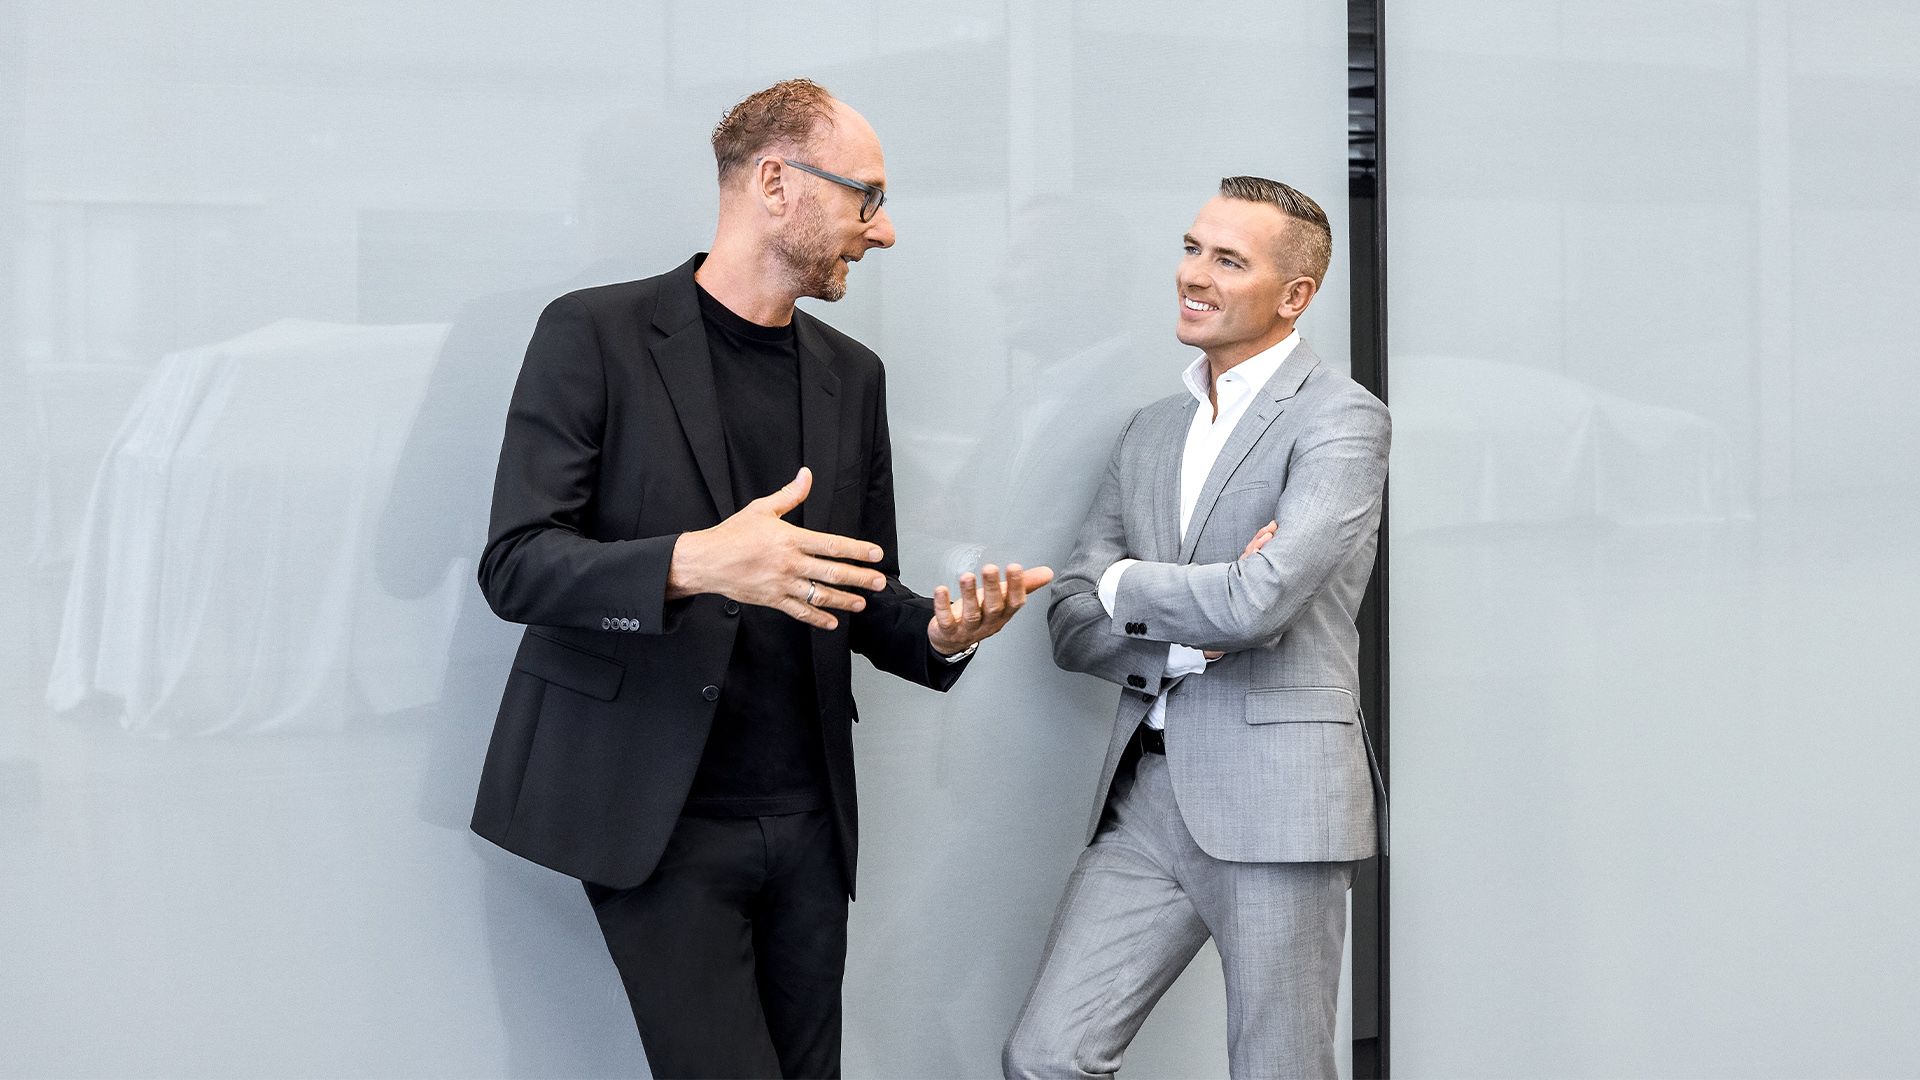 Marc Lichte and Henrik Wenders in conversation